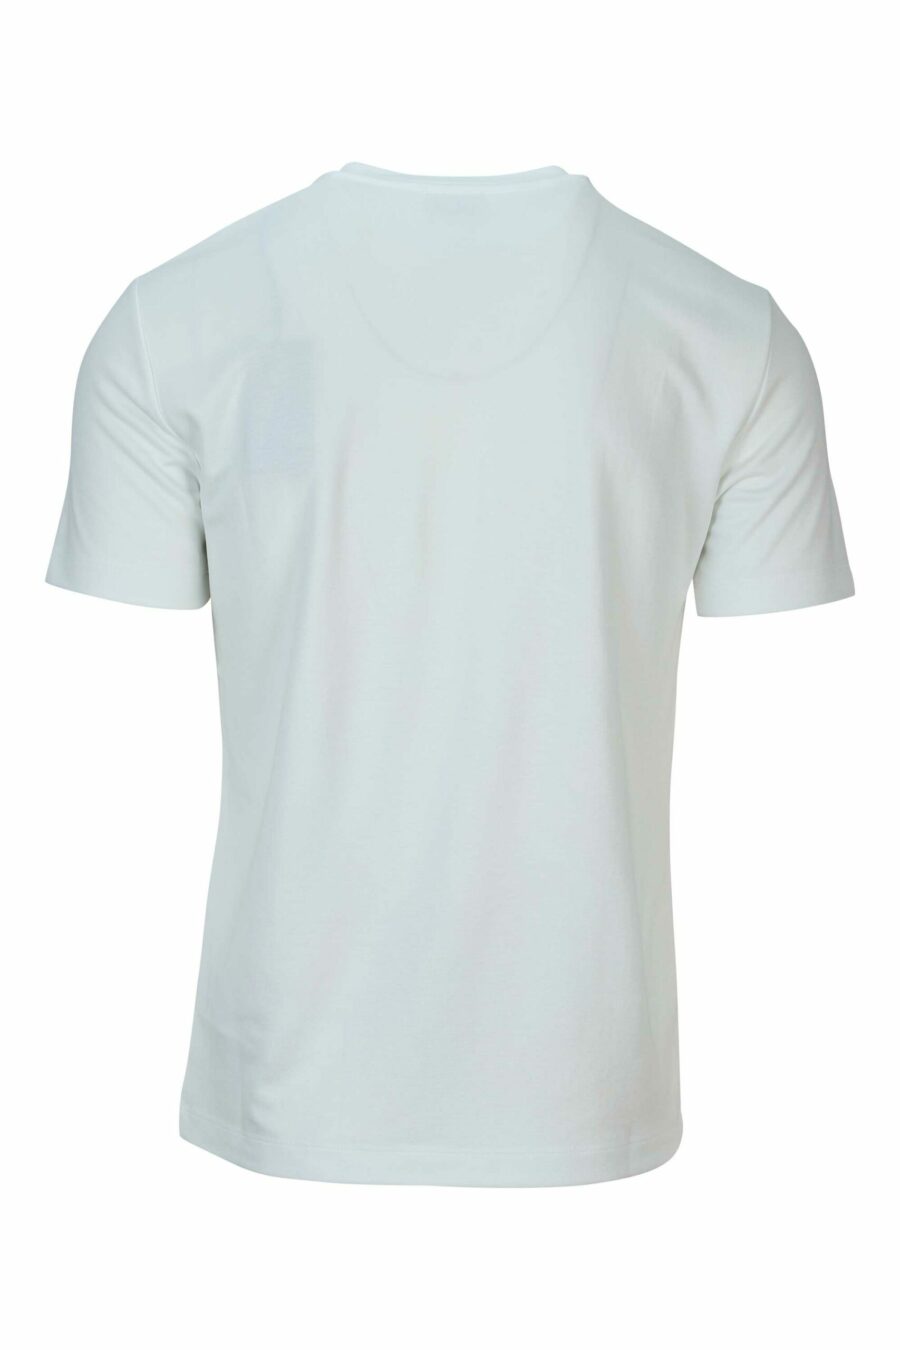 T-shirt blanc oversize avec mini-logo "lux identity" blanc sur fond noir - 8058947508495 1 scaled